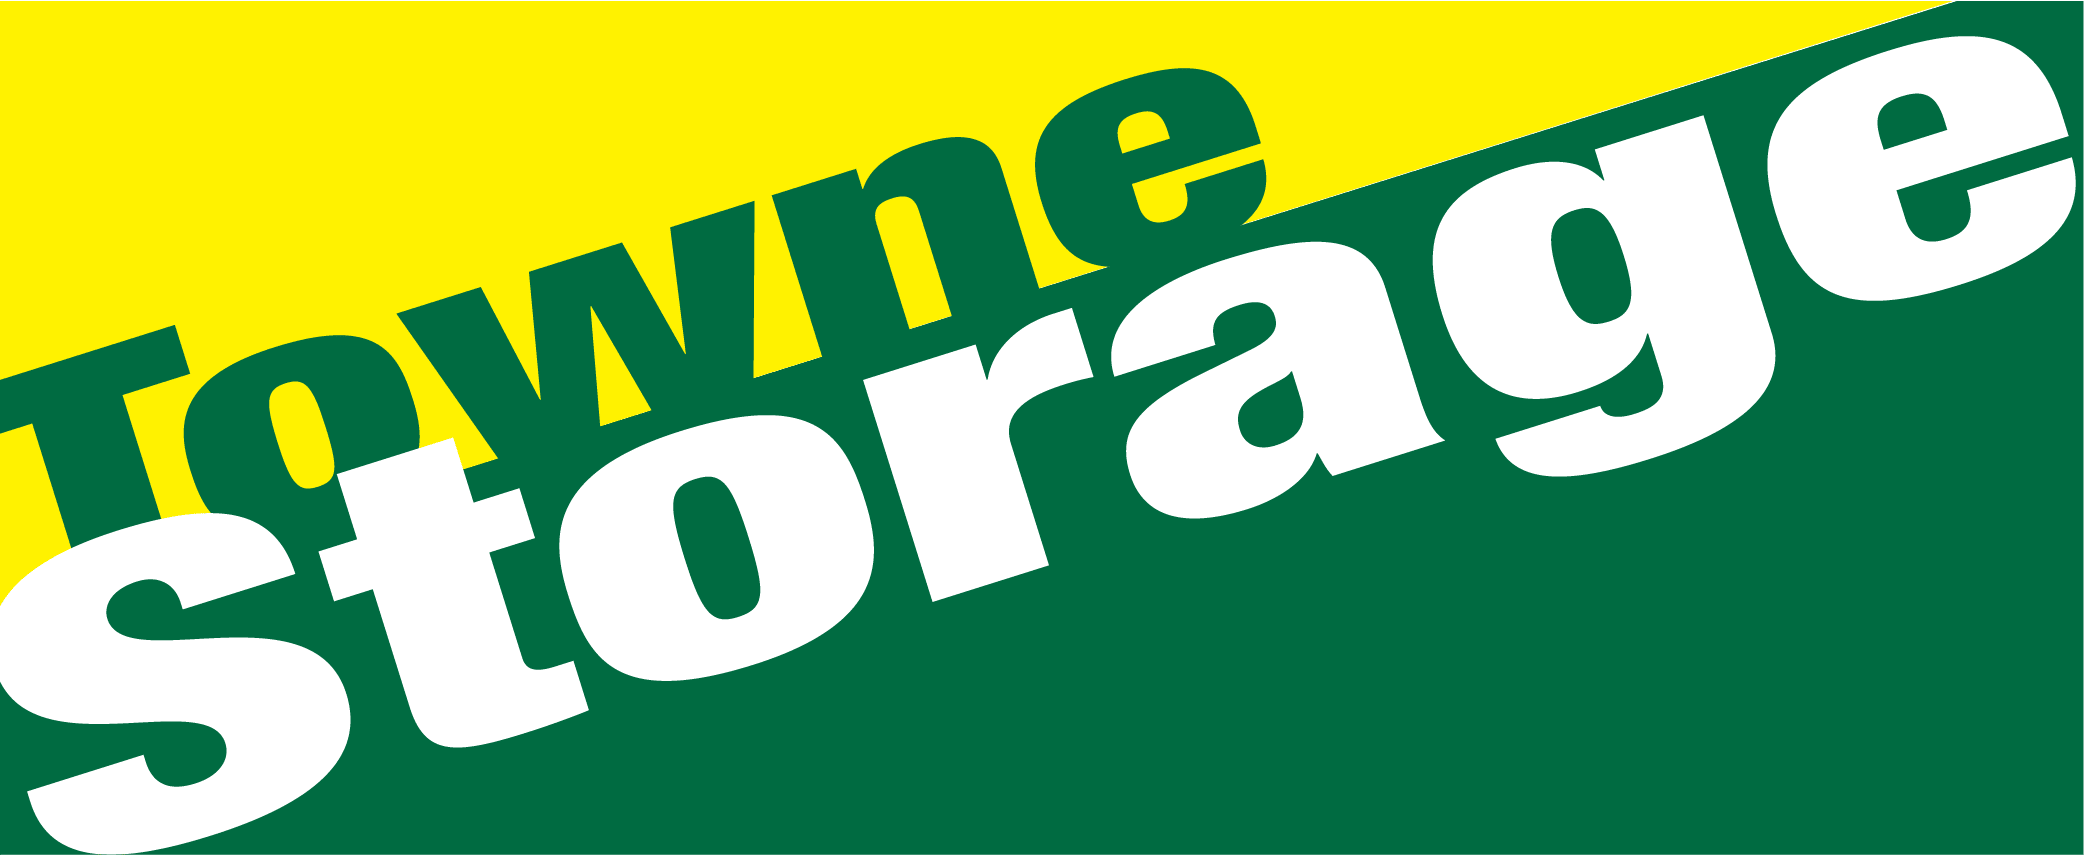 Towne Storage - Clinton logo